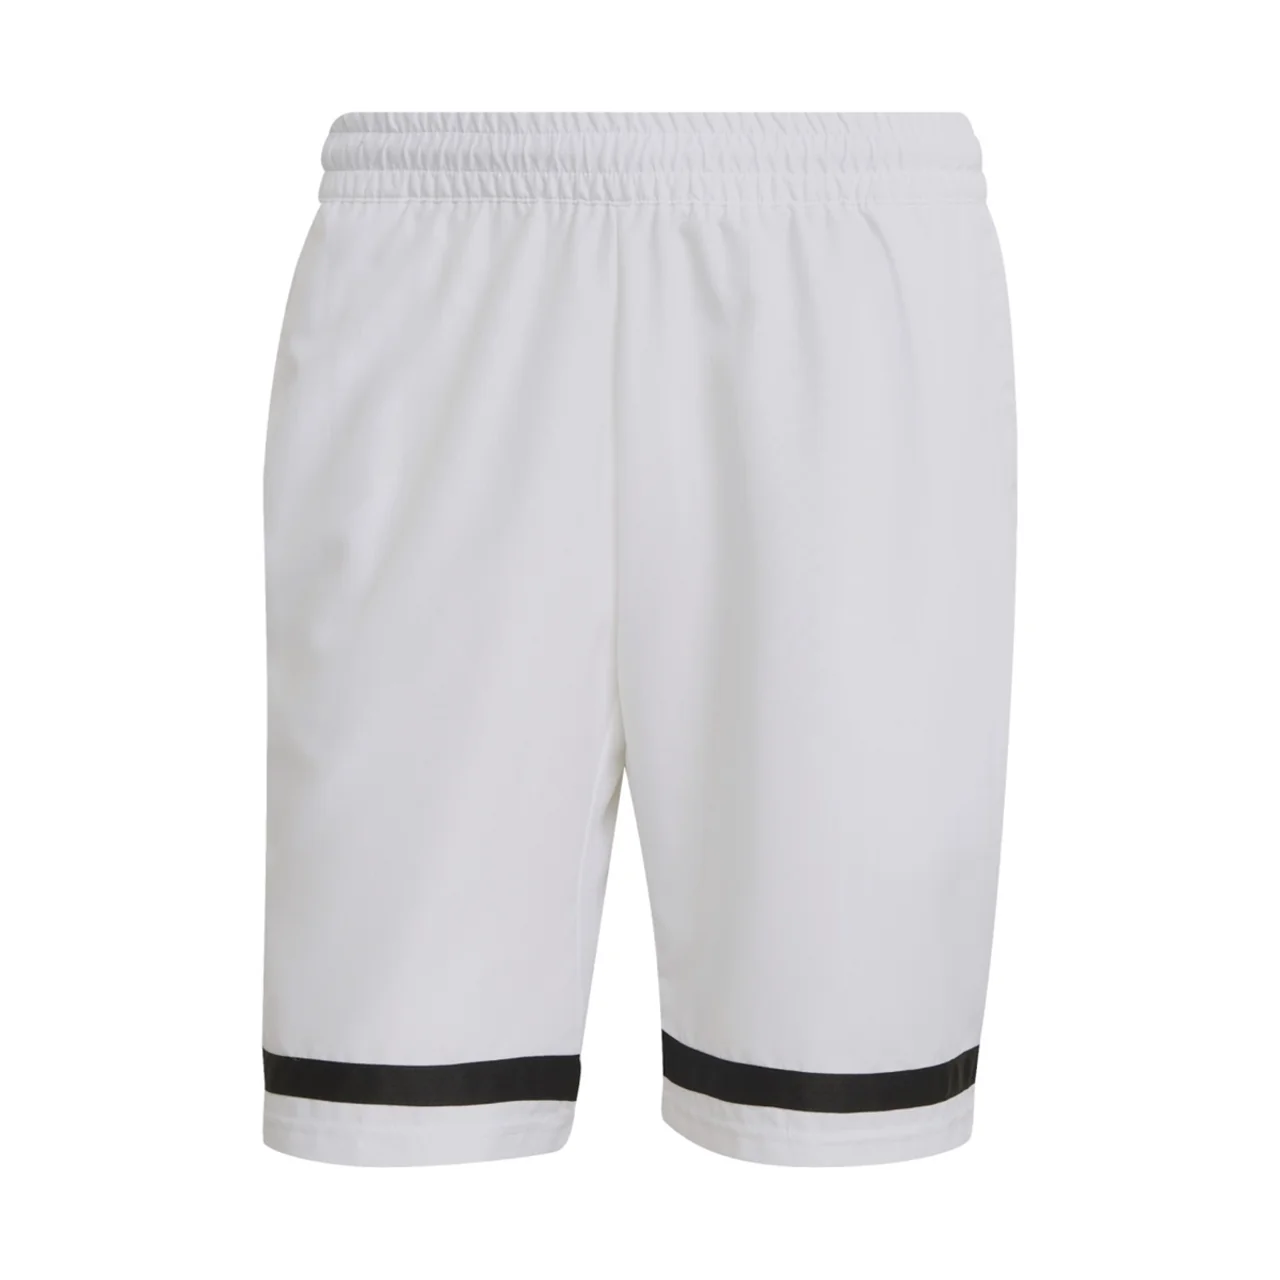 Adidas Club Shorts White